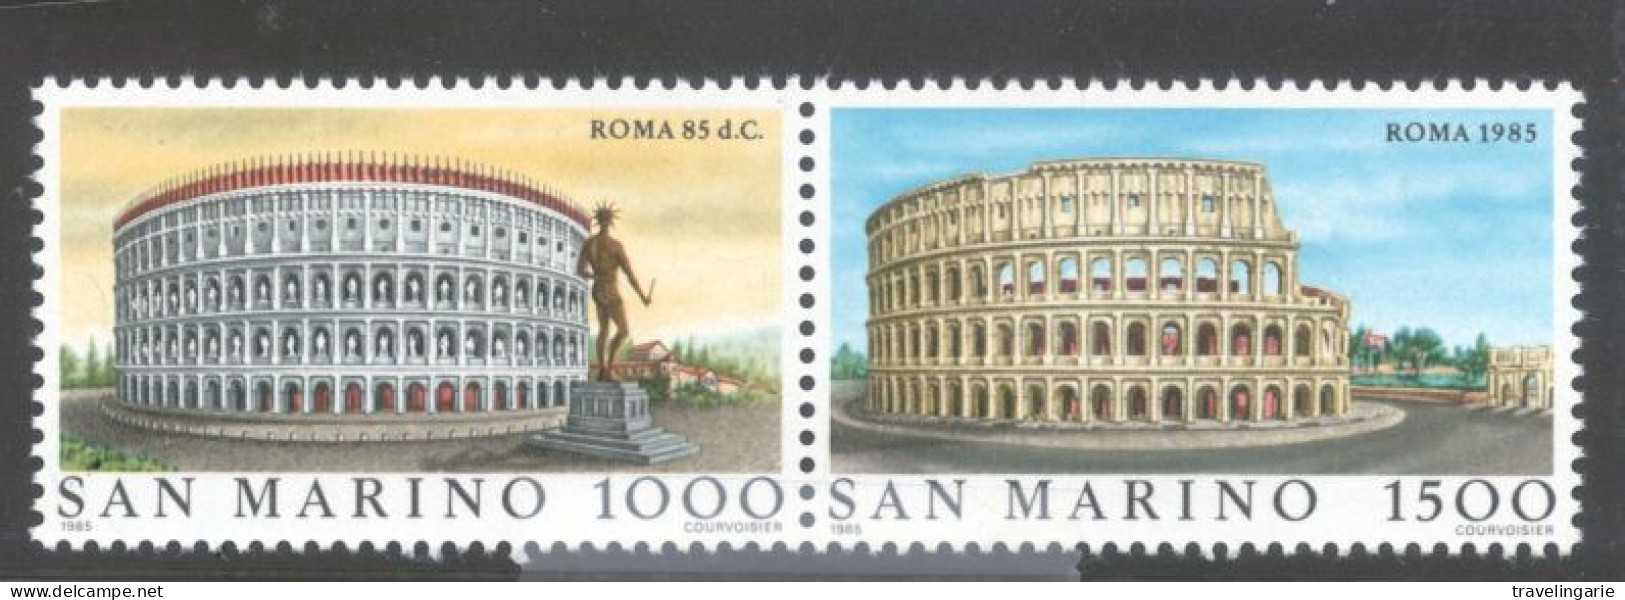 San Marino 1985 Famous Cities Roma MNH ** Se-tenant Pair - Denkmäler